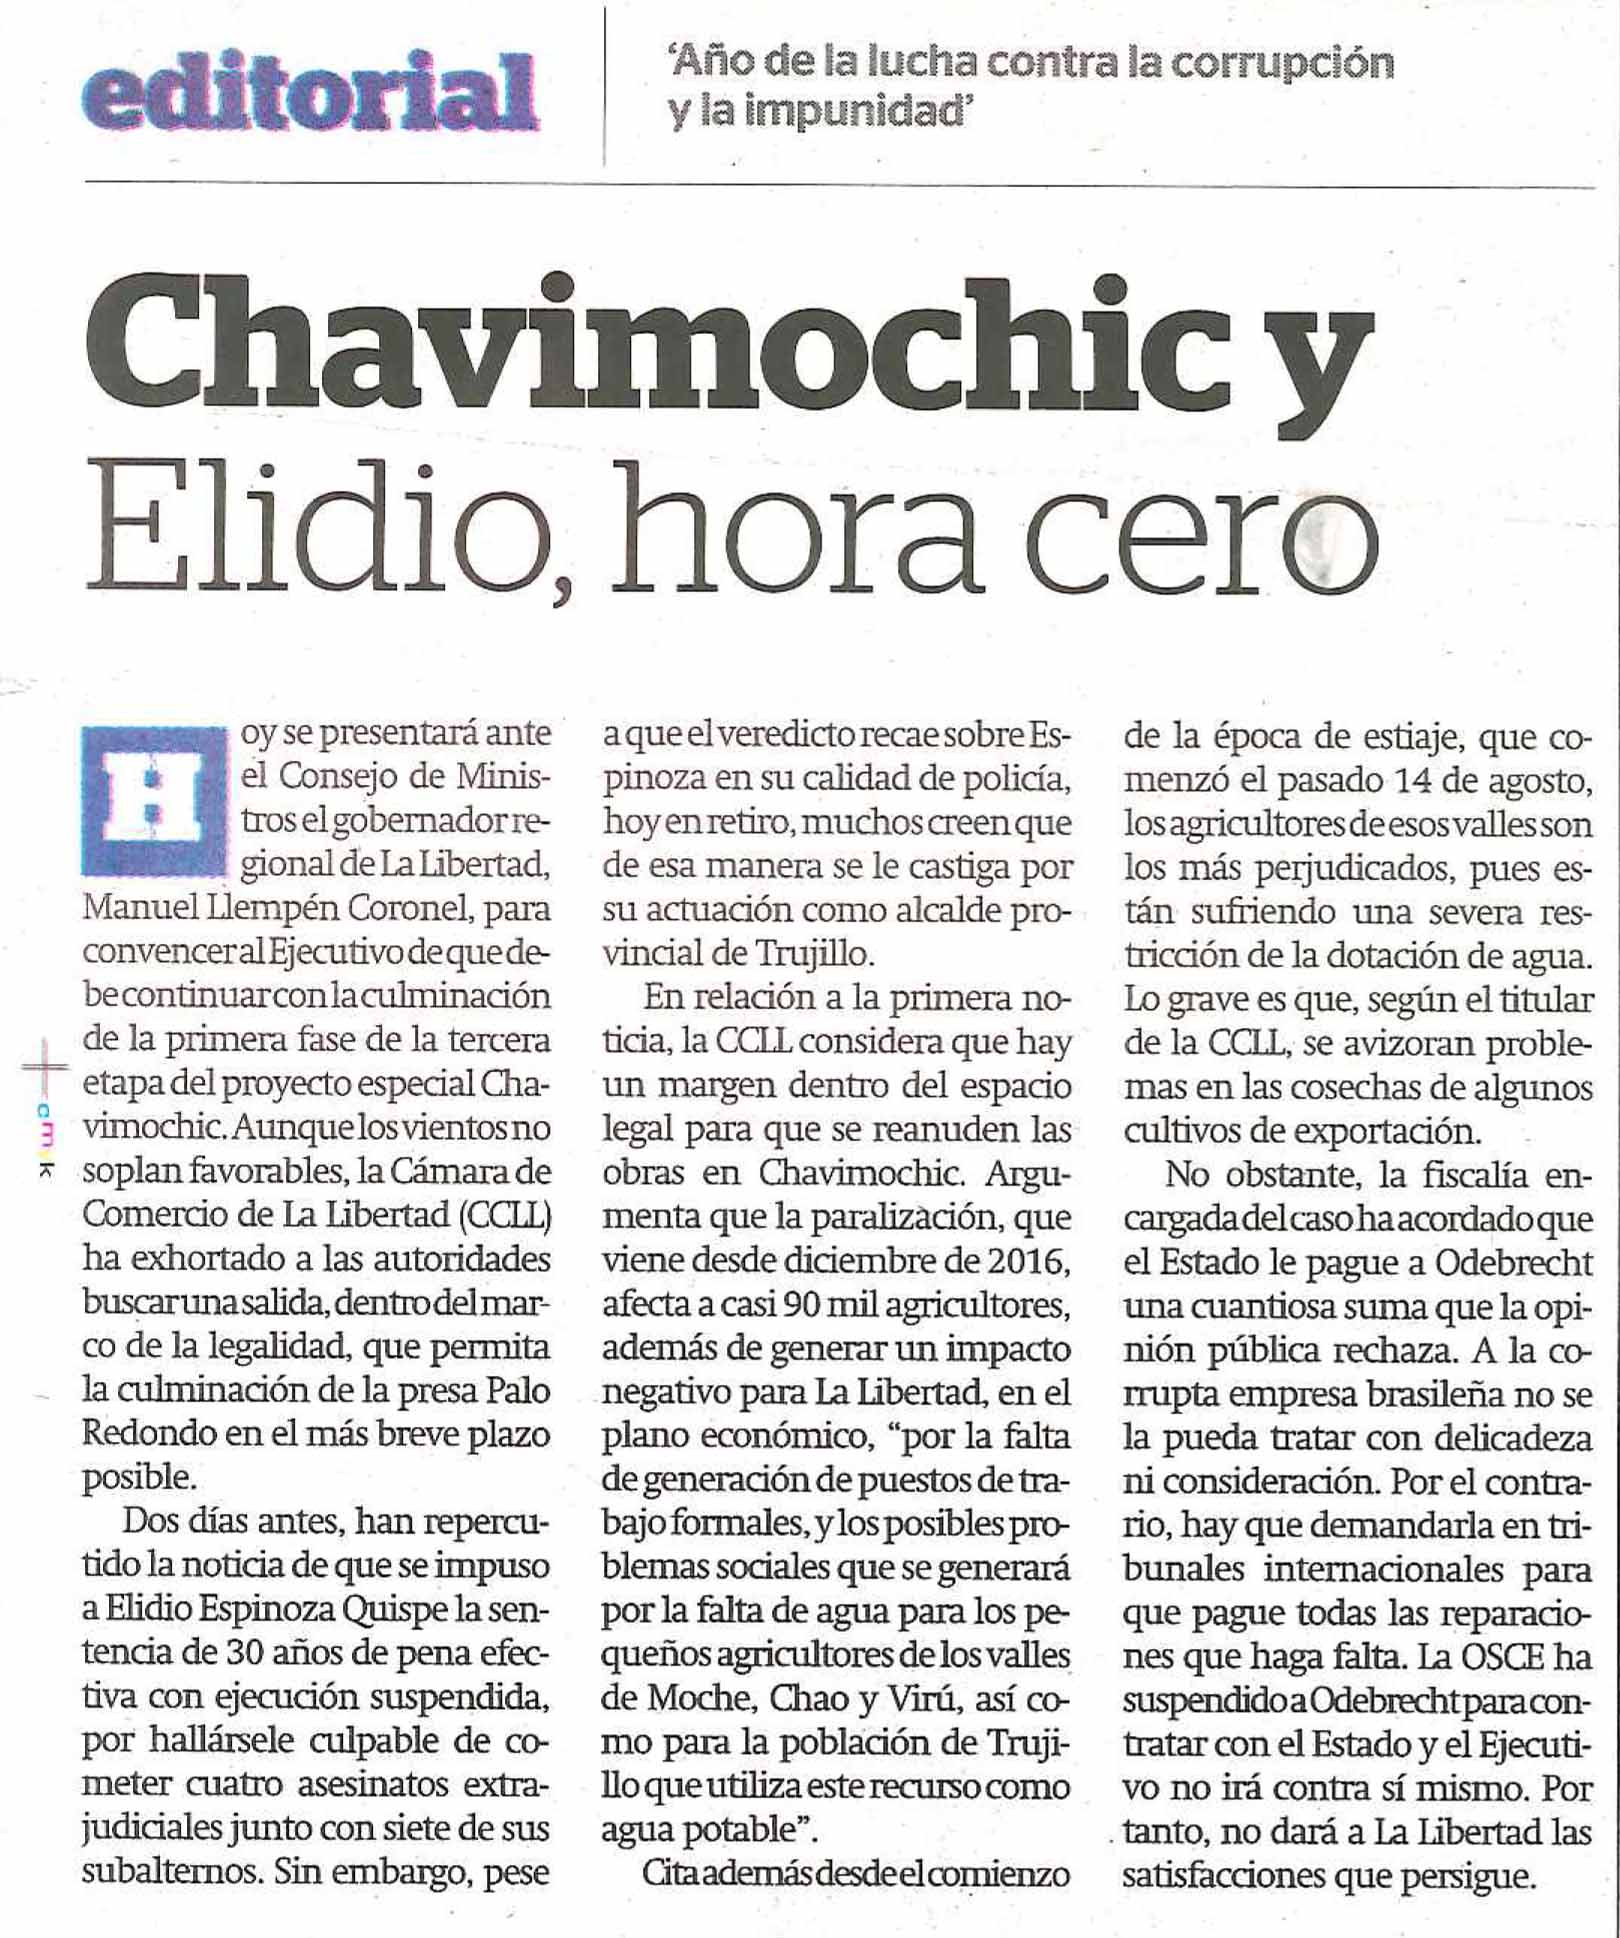 18.09.19.12 La Industria Editorial  Chavimochic y Elidio, hora cero Cámara de Comercio de La Libertad CCLL